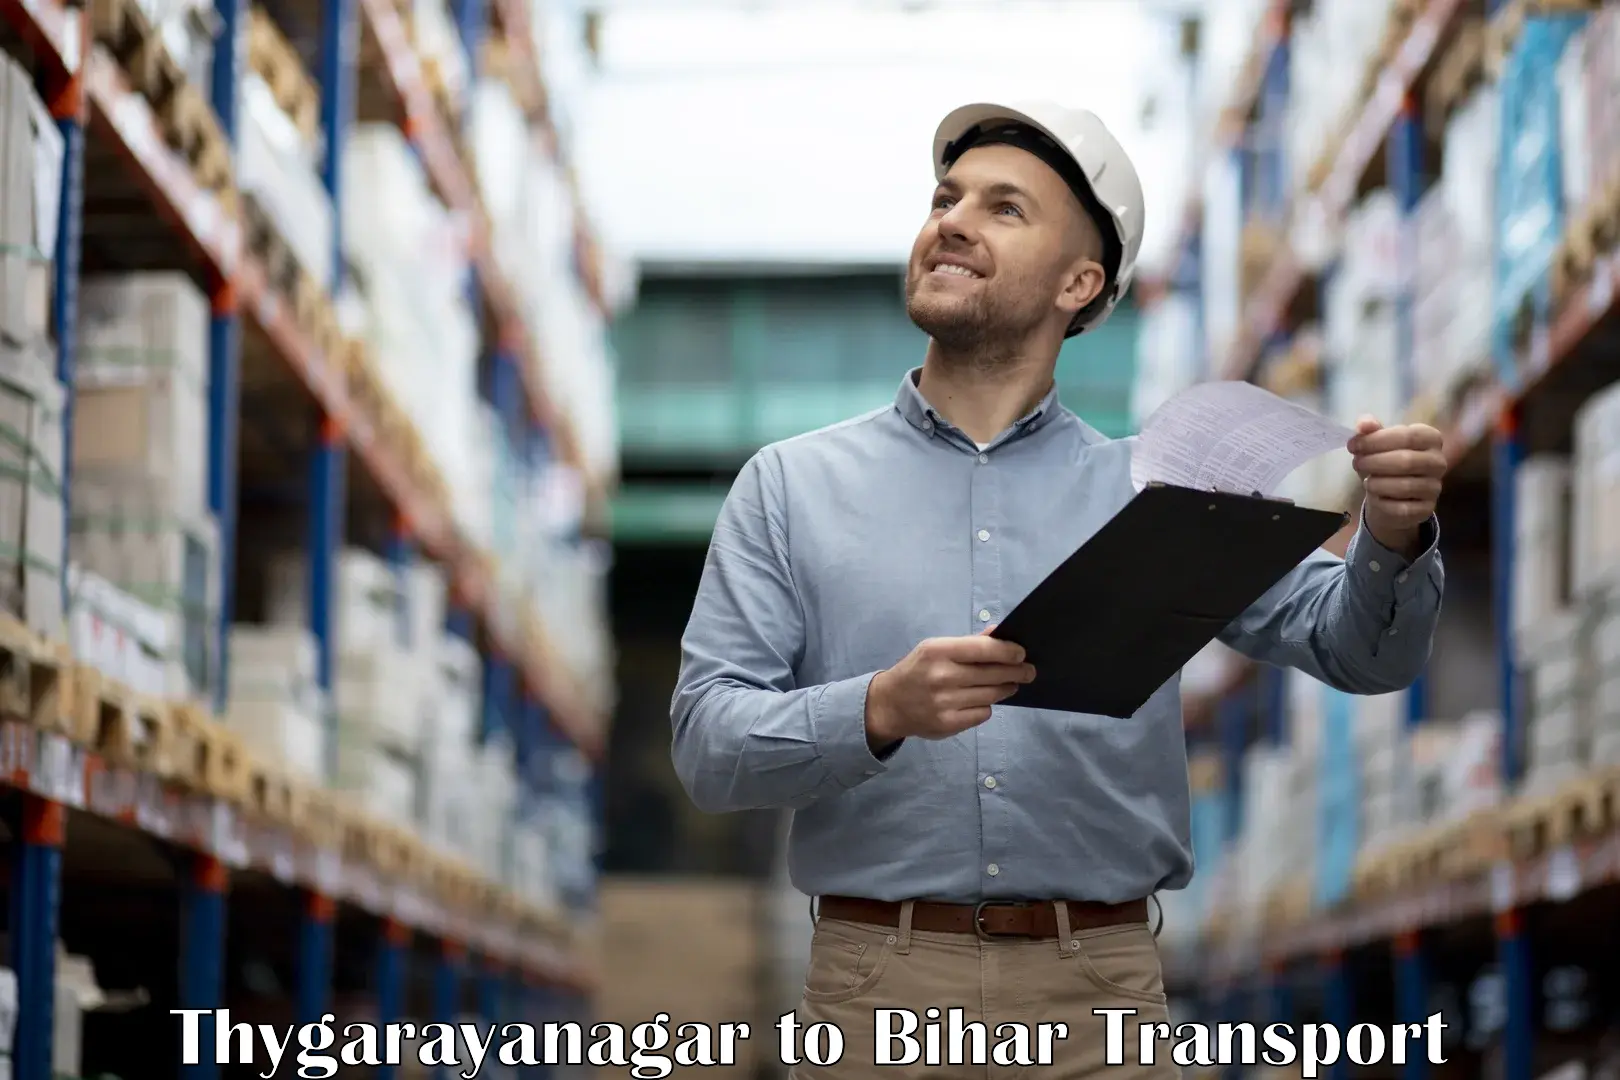 Road transport online services Thygarayanagar to Patna